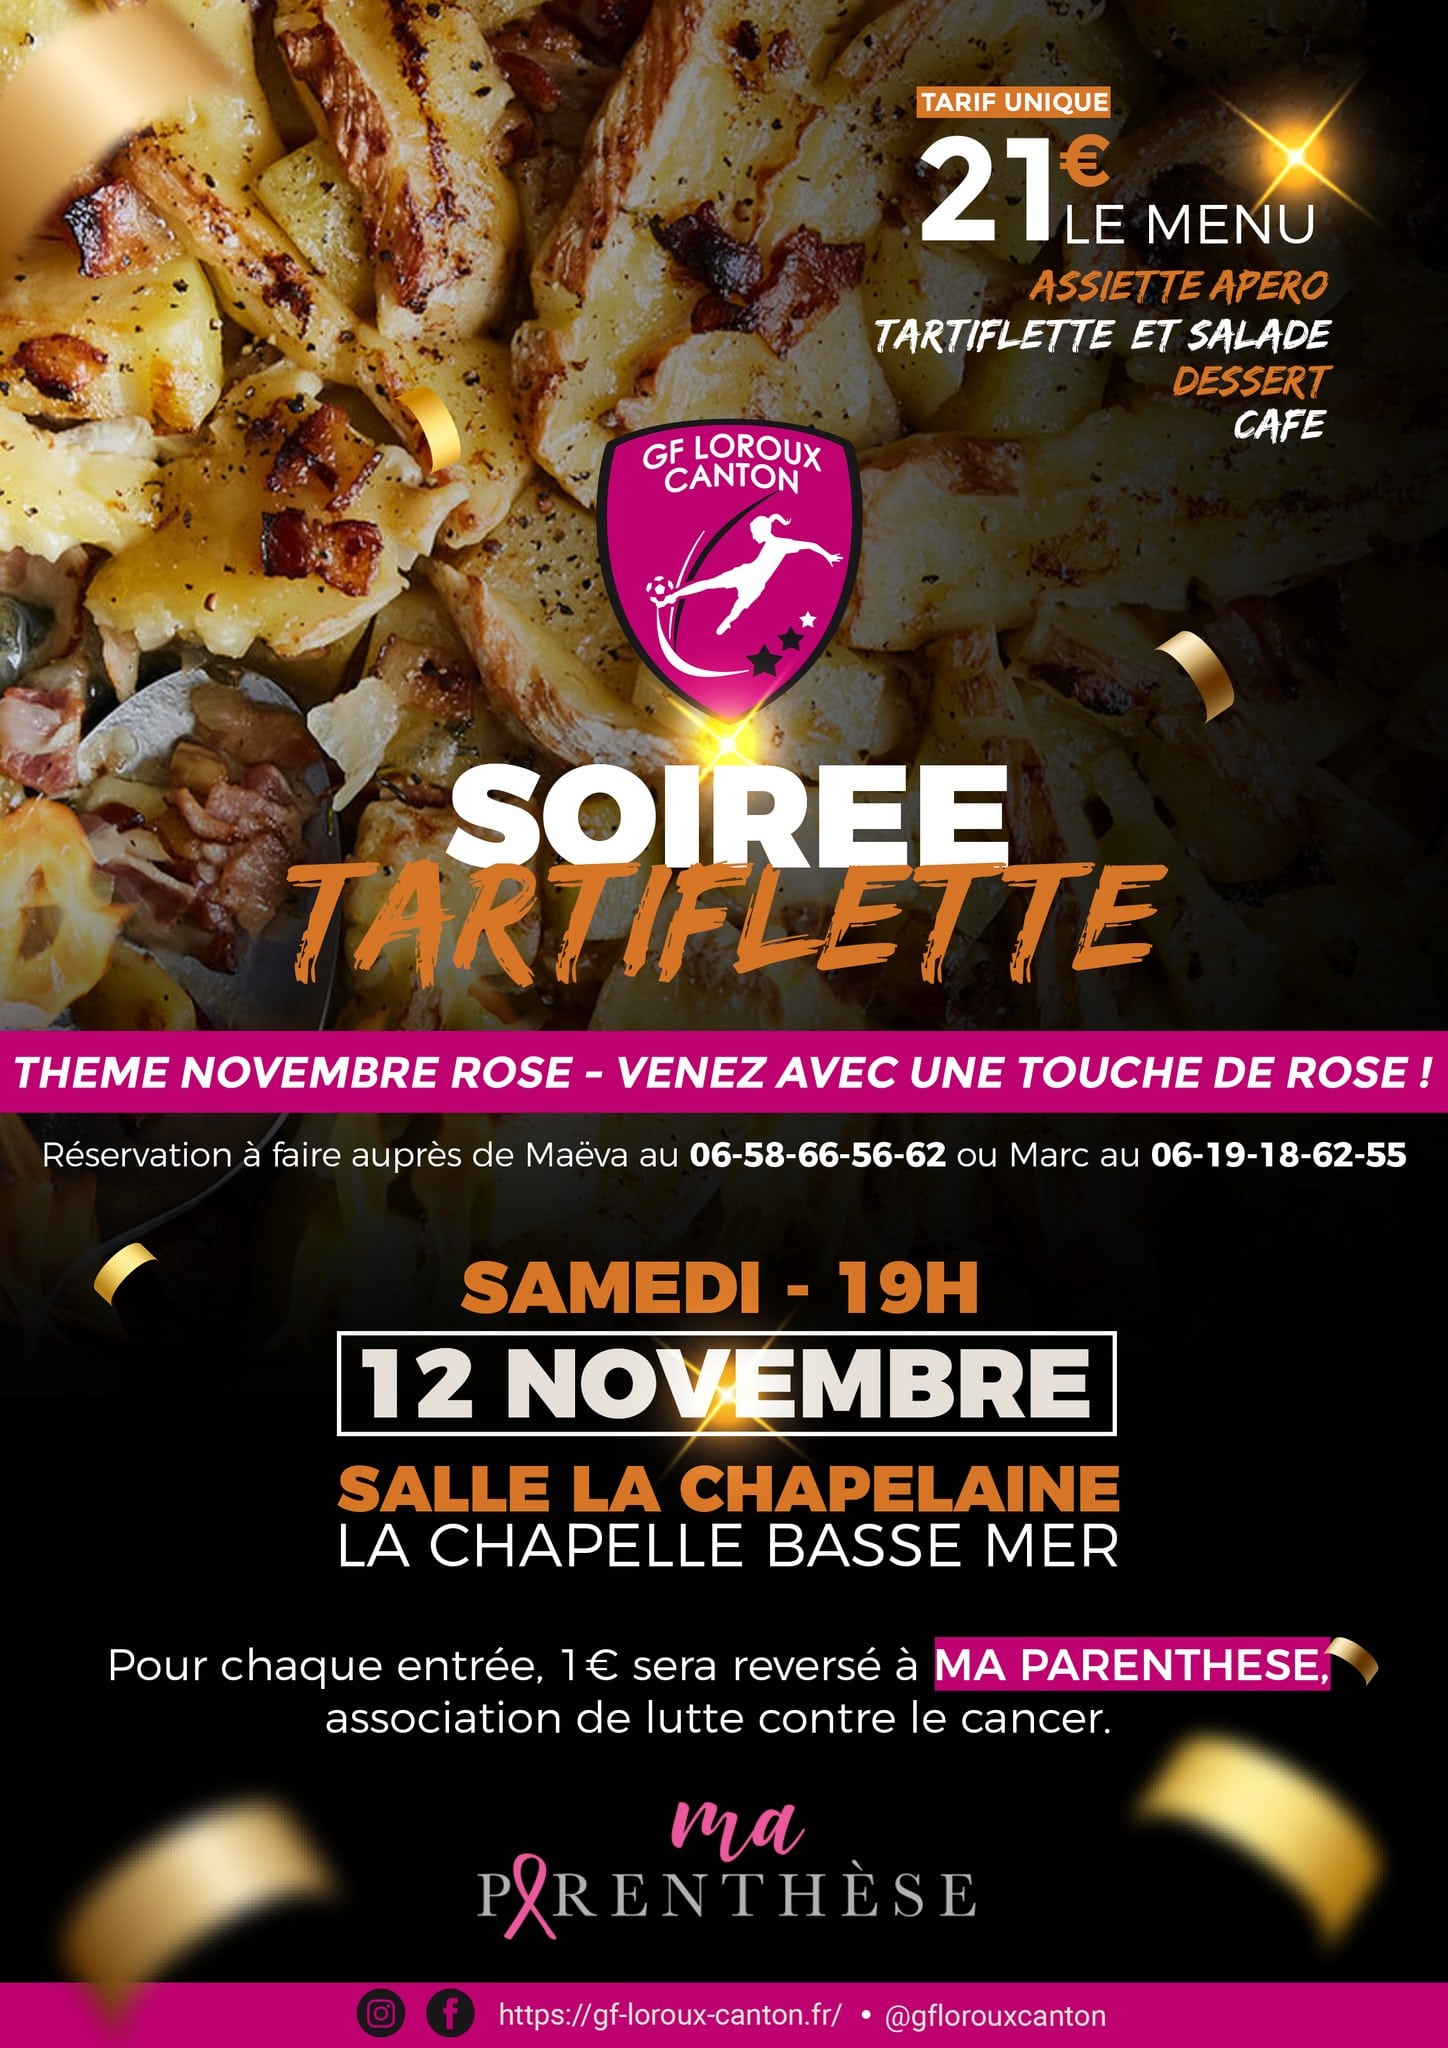 Affiche de la soirée club du GF Loroux Canton du 12 novembre.